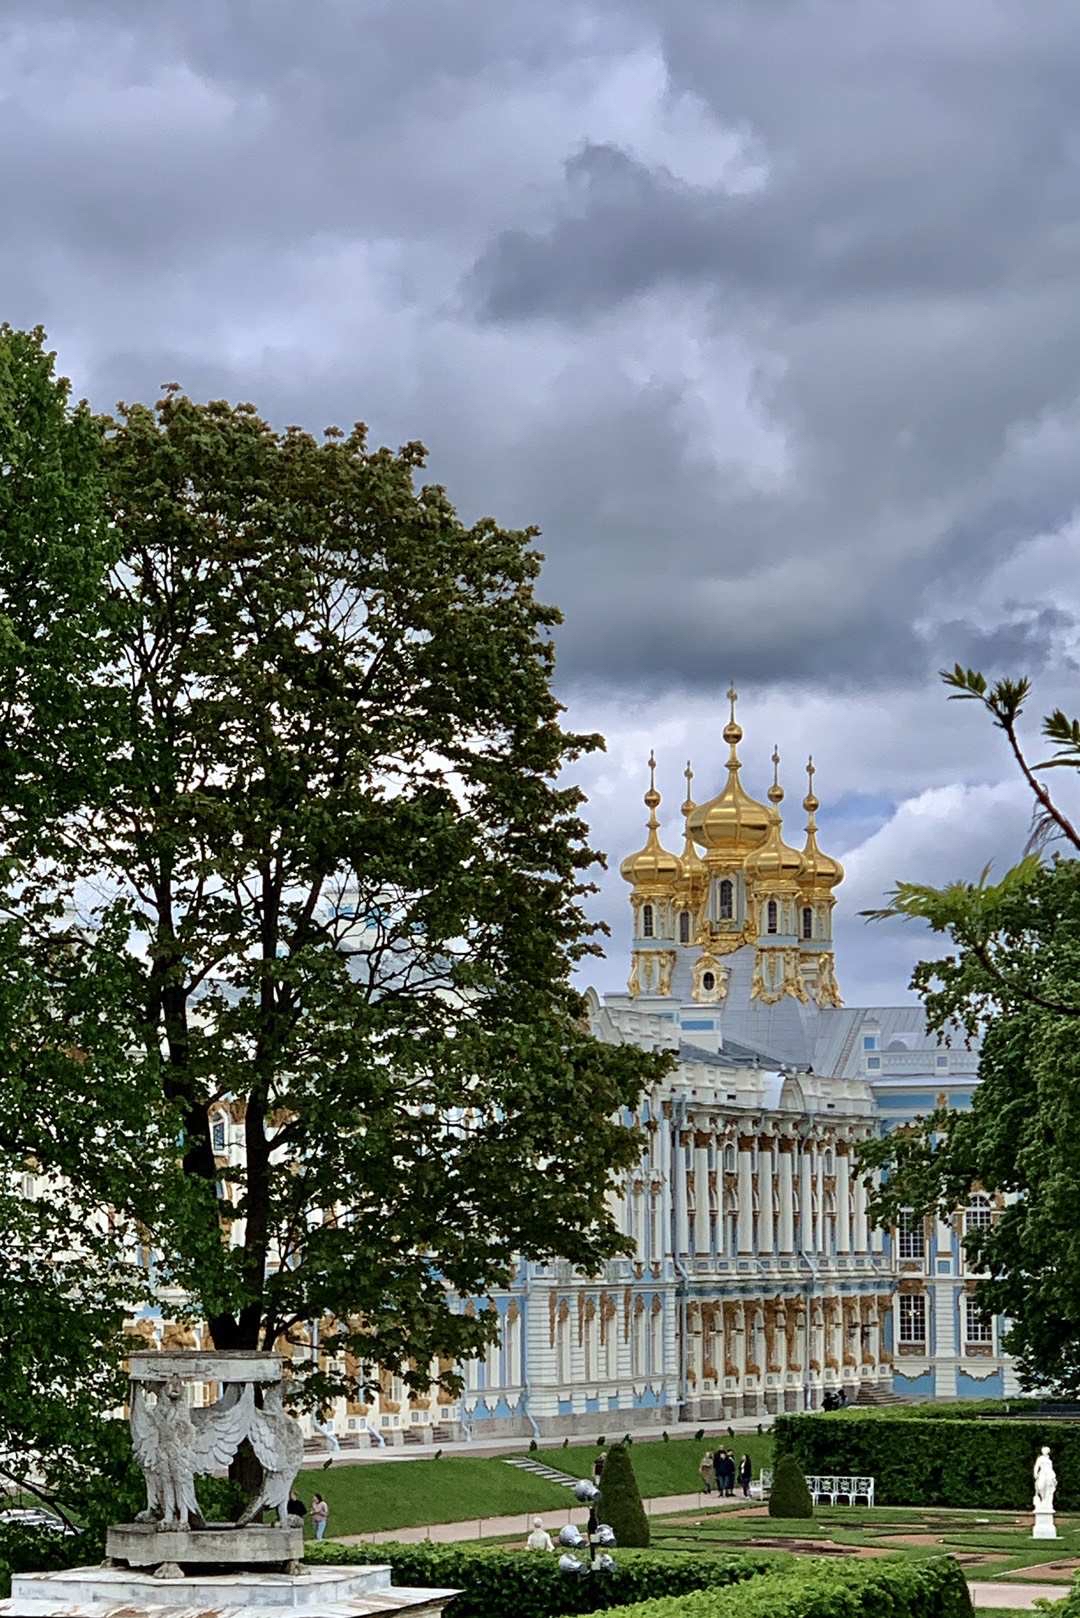 2019年5月俄罗斯叶卡捷琳娜宫。一尺潇潇动叶宫，云台瑟瑟两袂空